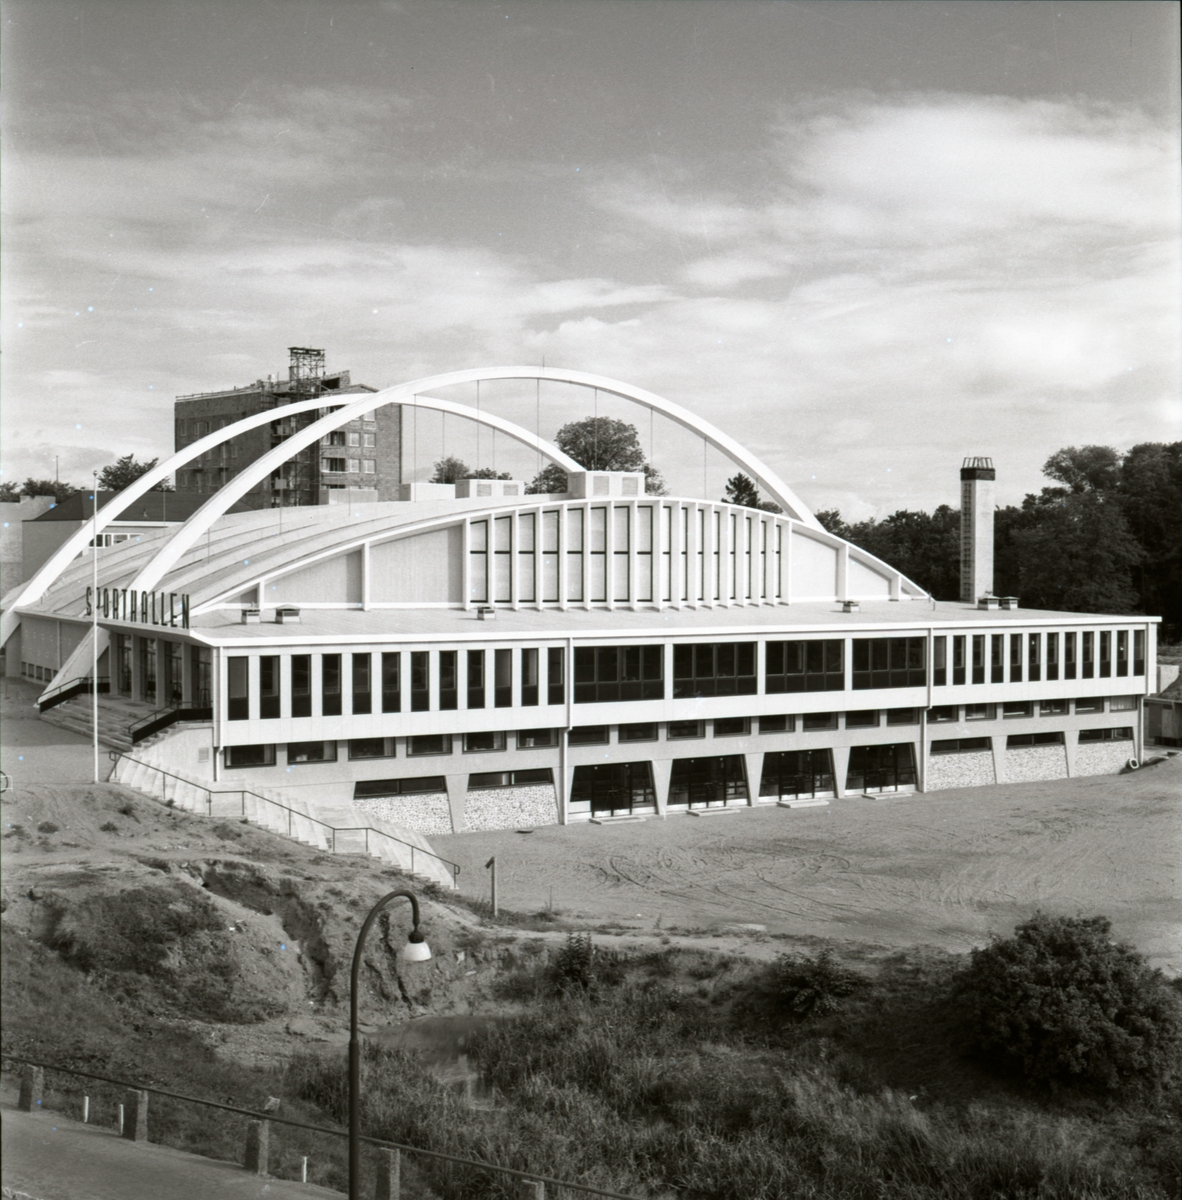 Sporthallen står färdig. Planering av omgivningen pågår.
Sporthallen är en modernistisk och konstruktivistisk byggnad. Den uppfördes 1955-56, arkitekt Hans Westman. Invigningen var den 6 oktober 1956.